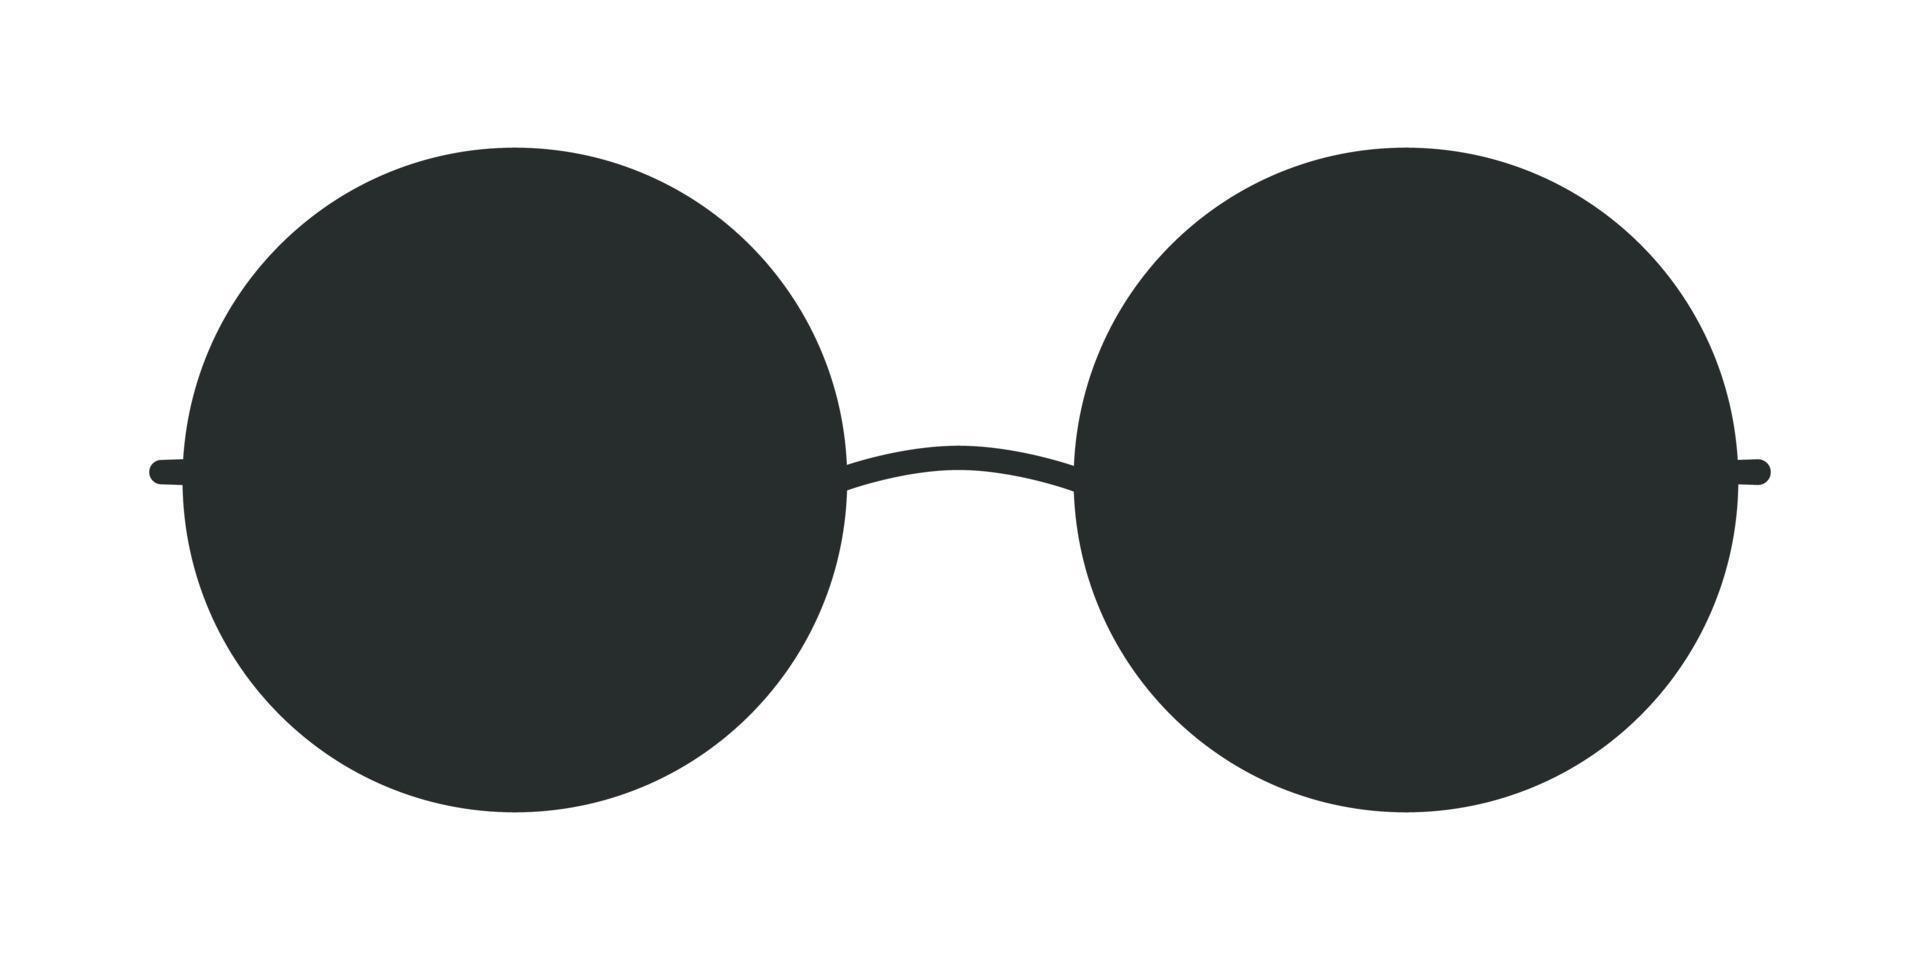 illustration de lunettes de soleil de forme ronde boho hippie vecteur plat. éléments groovy rétro dessinés à la main